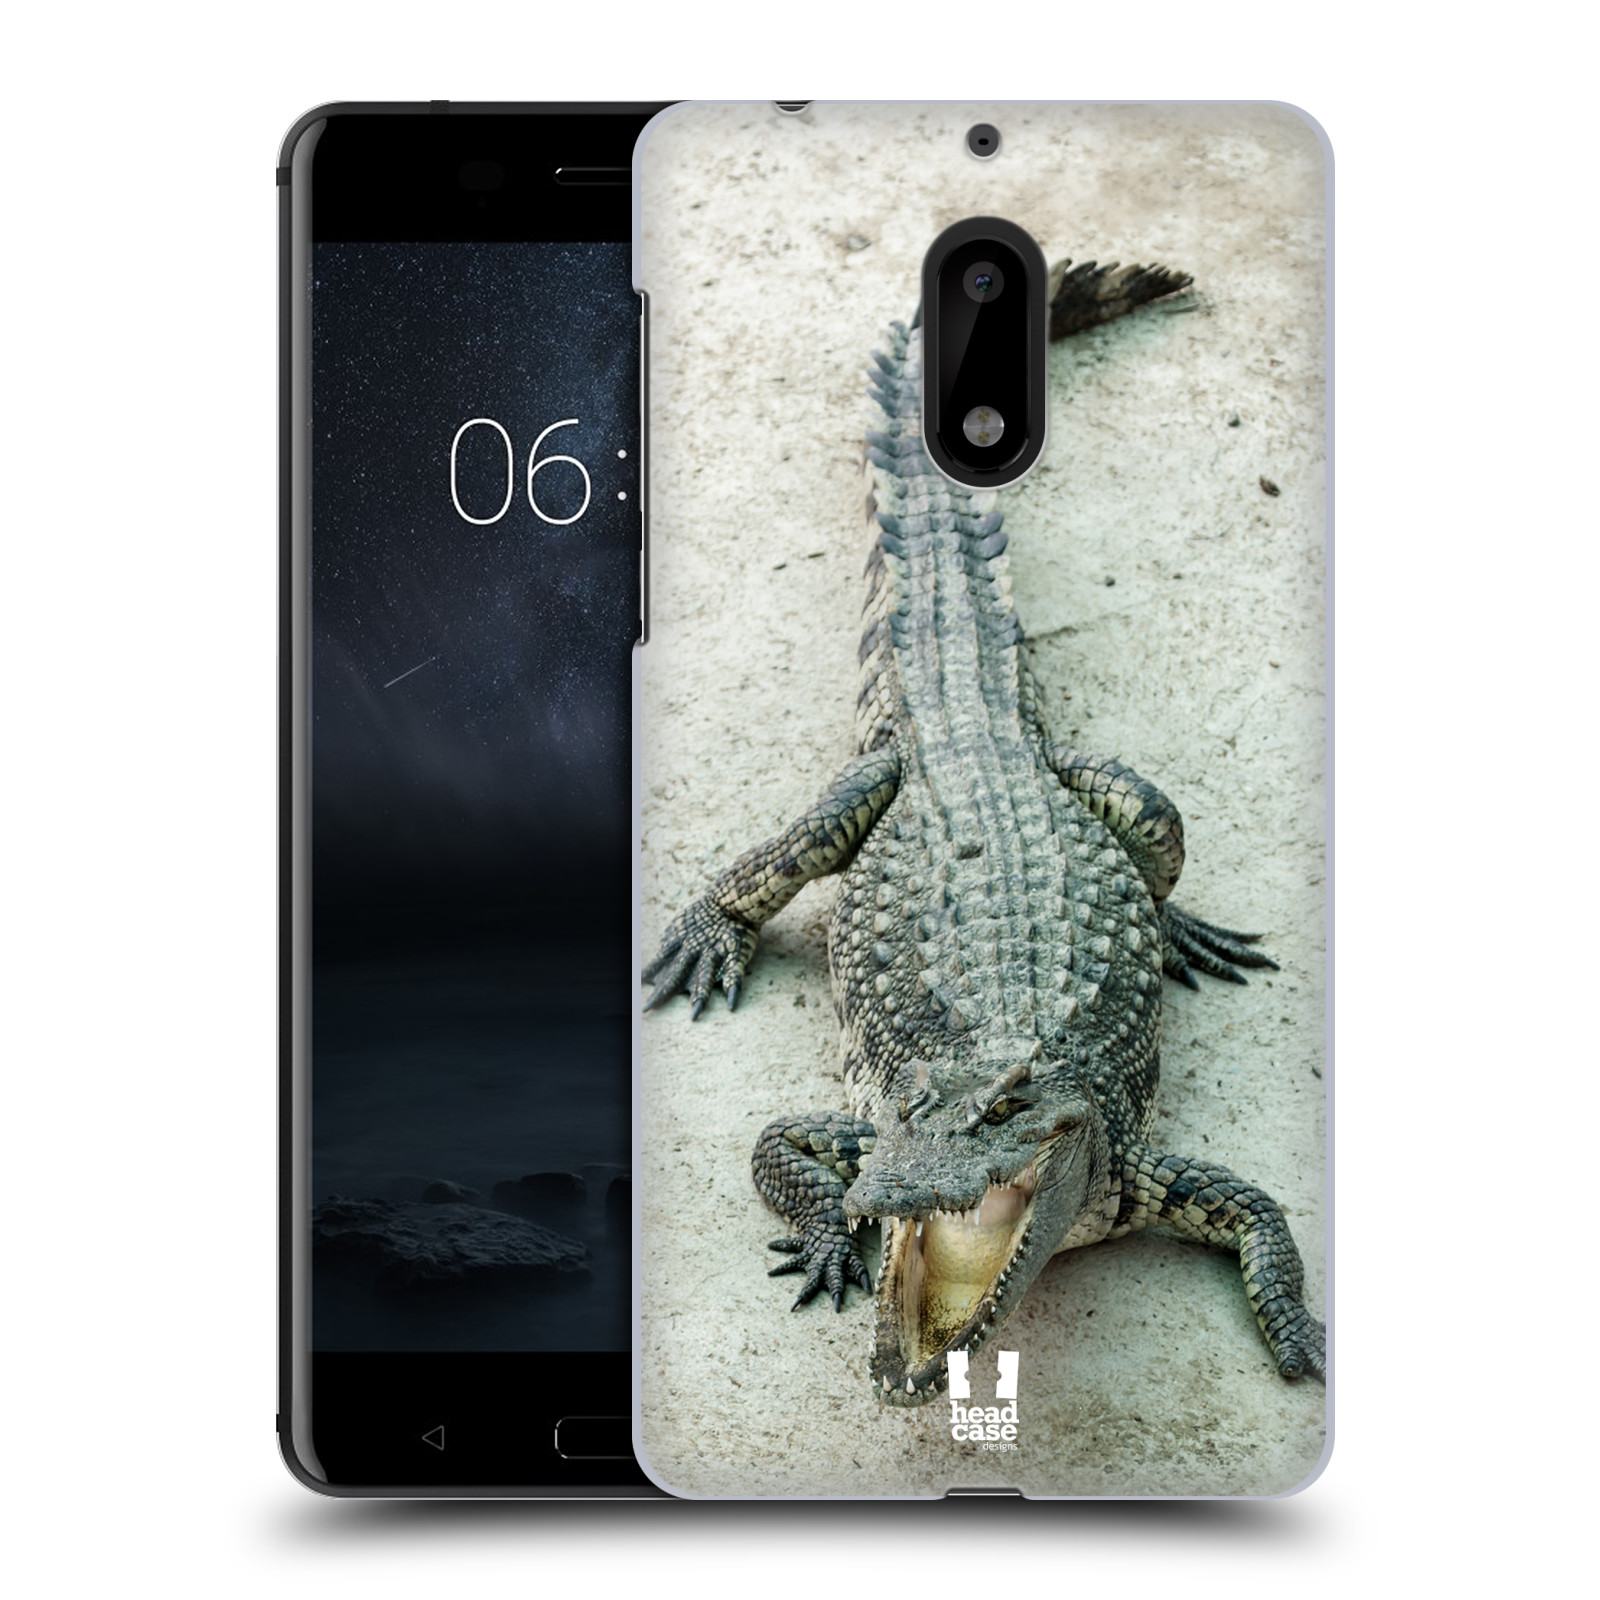 HEAD CASE plastový obal na mobil Nokia 6 vzor Divočina, Divoký život a zvířata foto KROKODÝL, KAJMAN